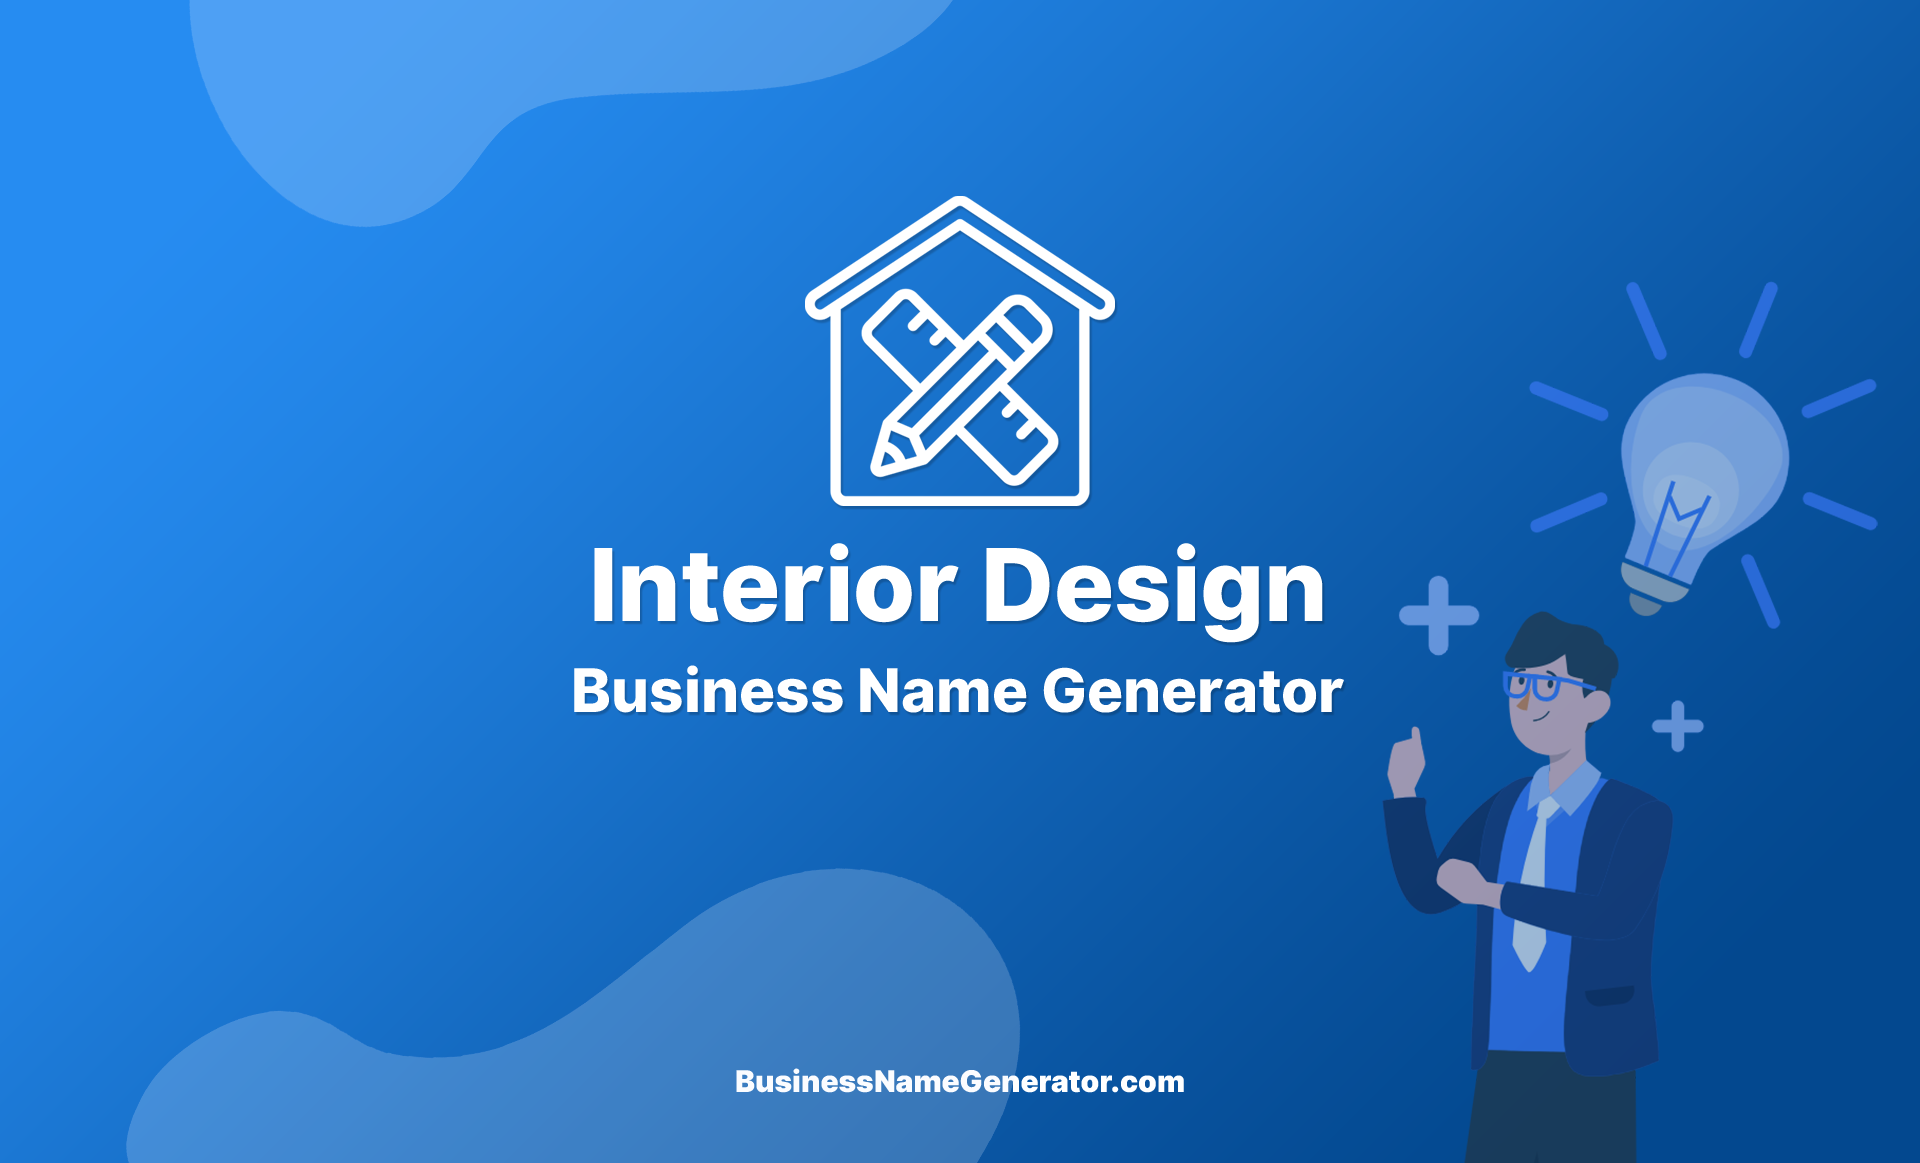 Interior Design Business Name Generator